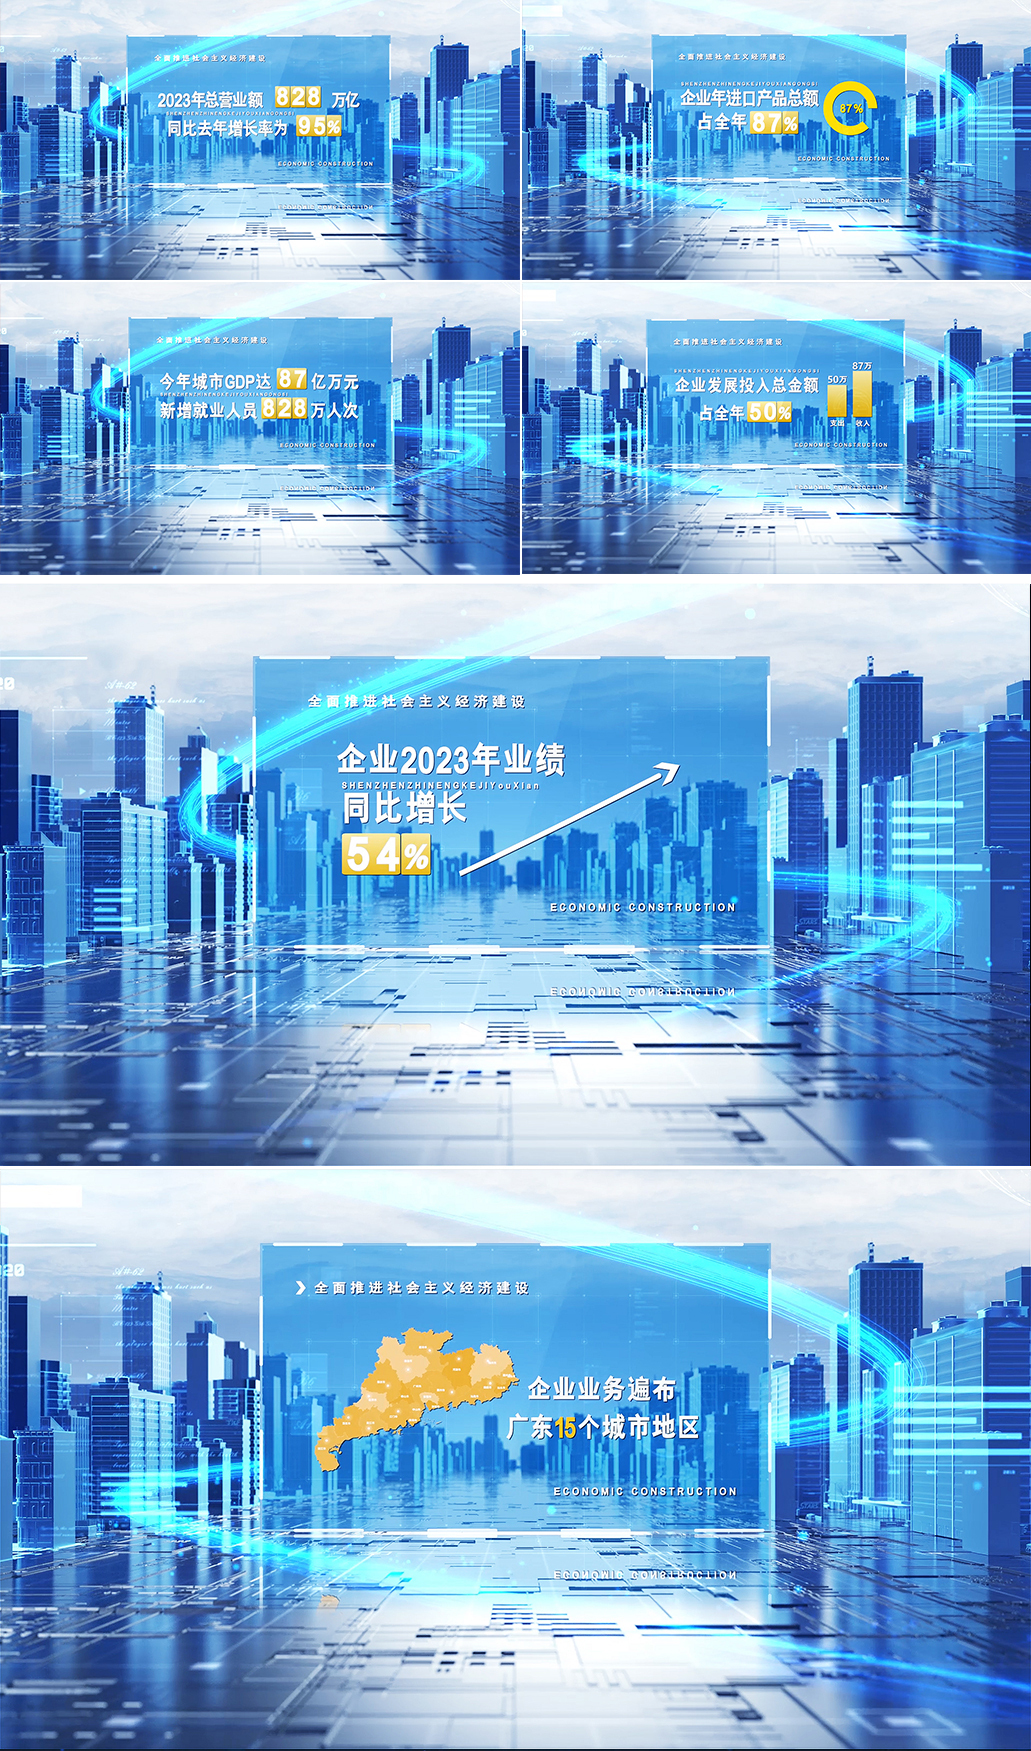 【AE模版】科技城市数据展示